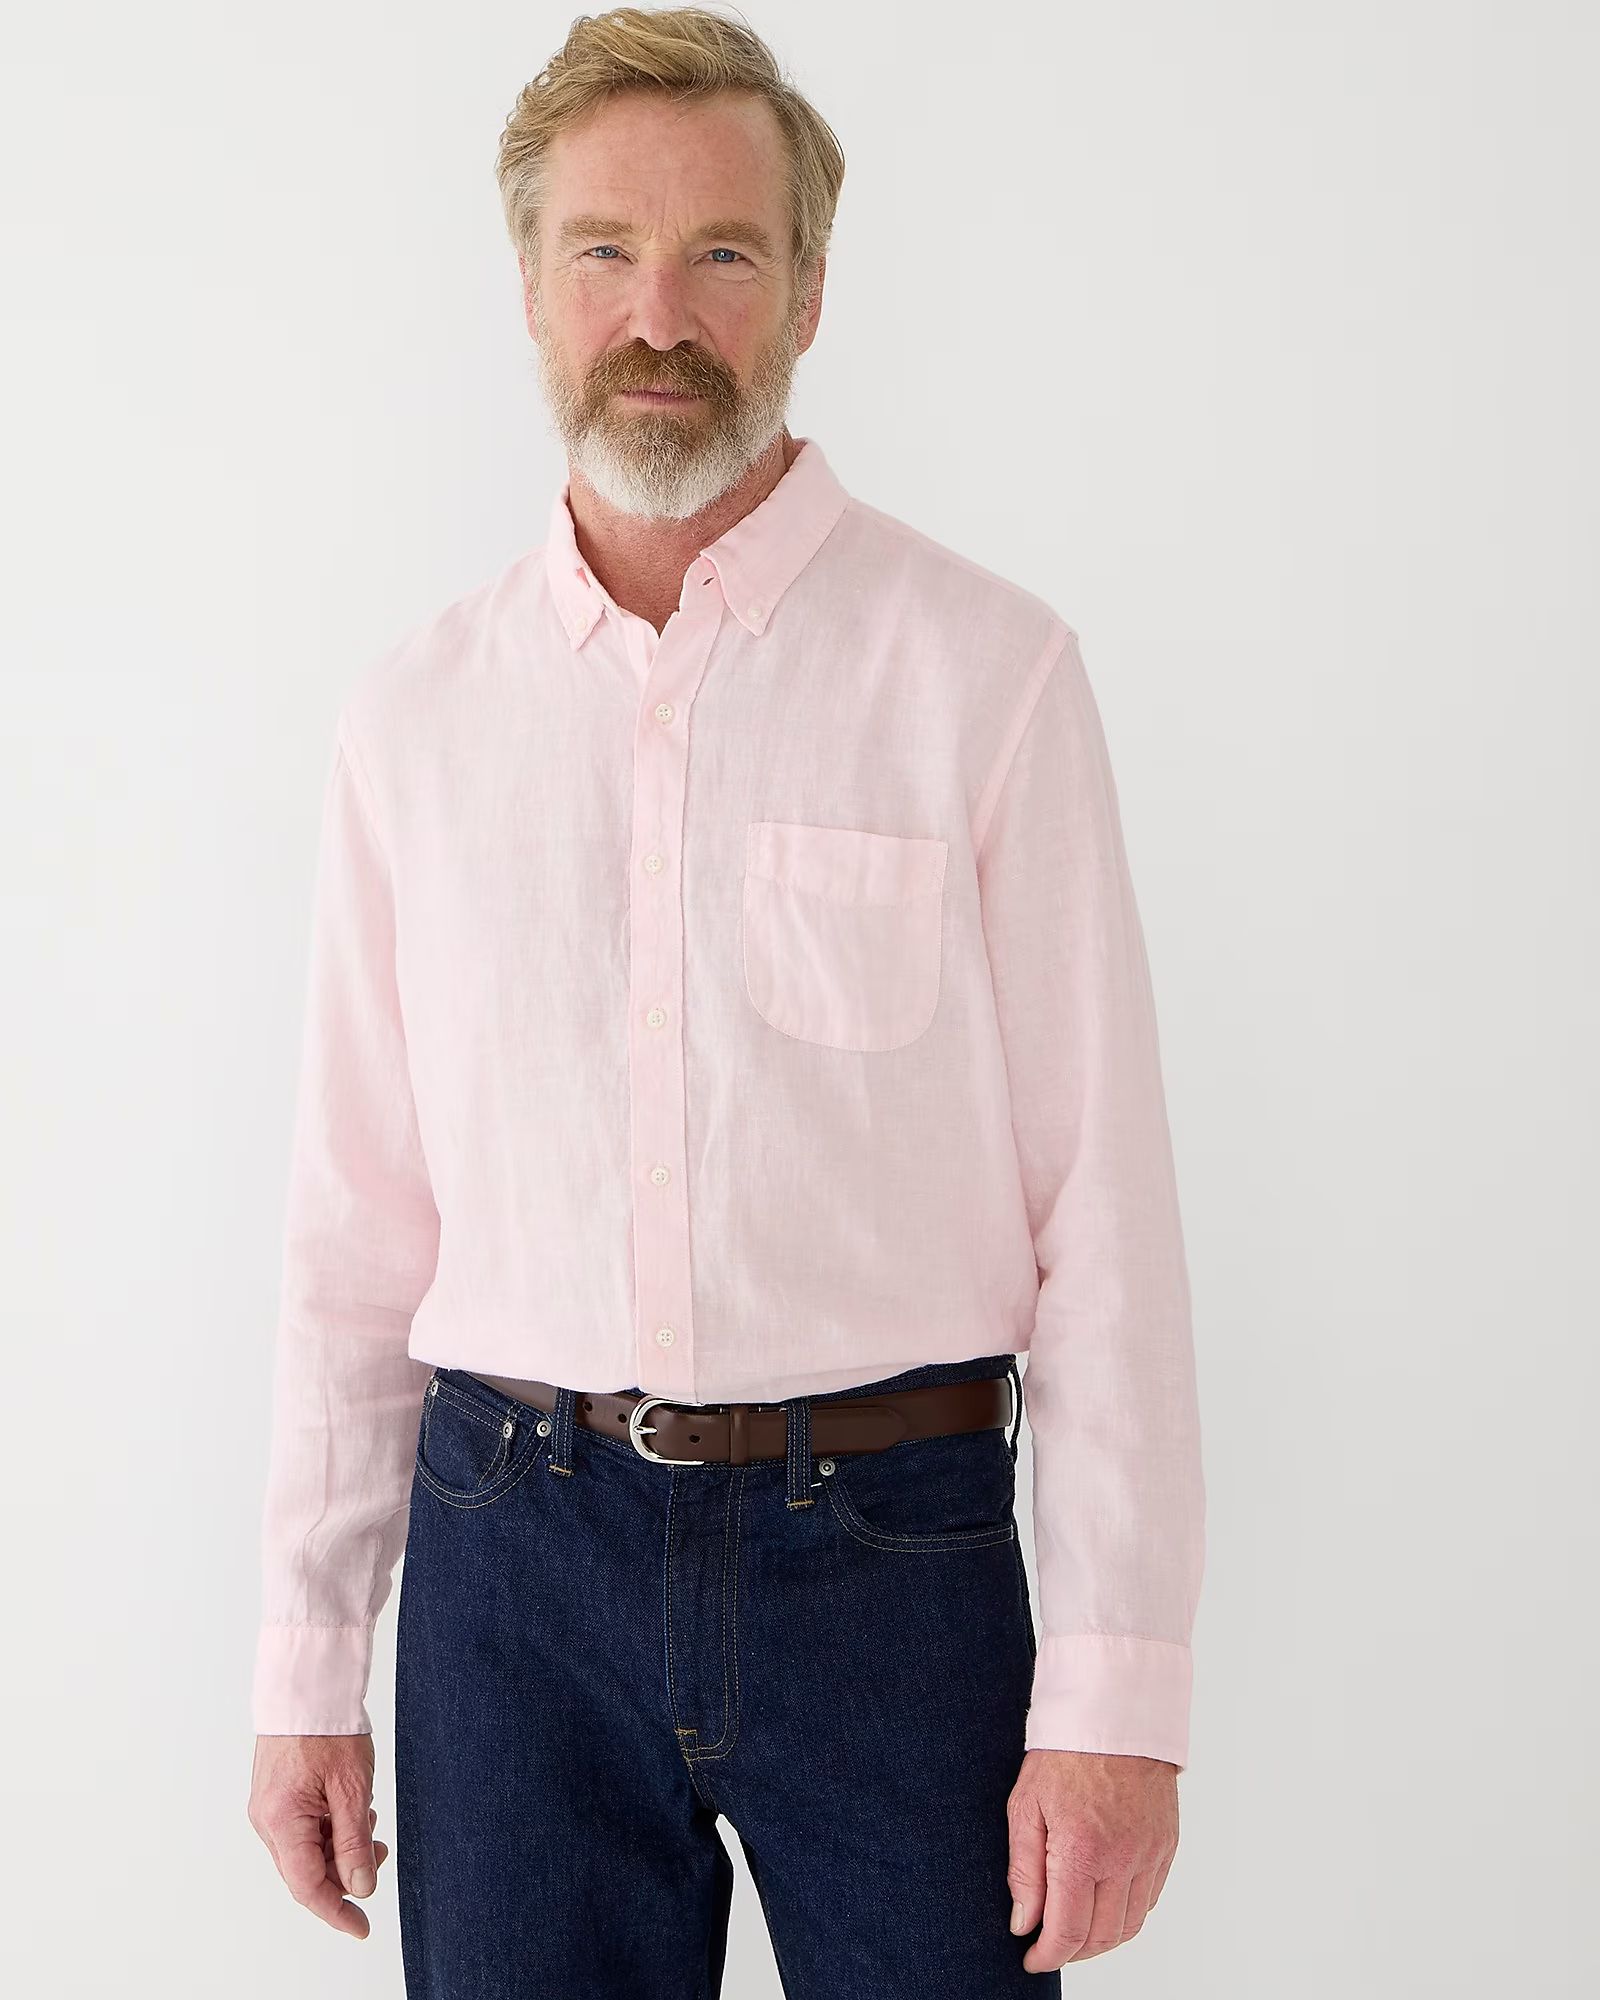 Baird McNutt garment-dyed Irish linen shirt | J.Crew US